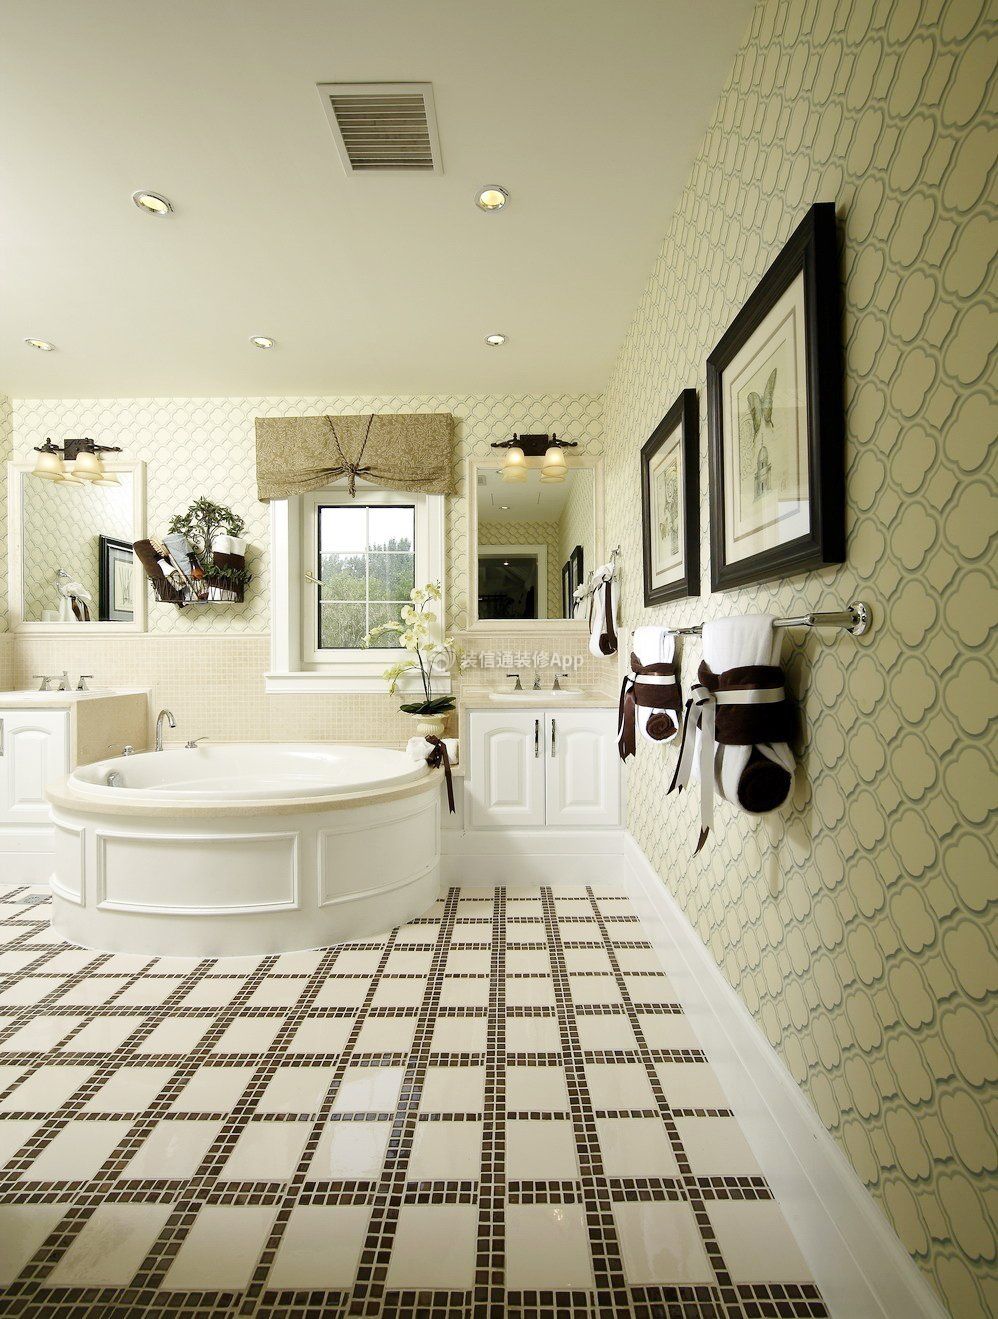 天津美式风格家庭别墅浴室地板砖装修装潢图片